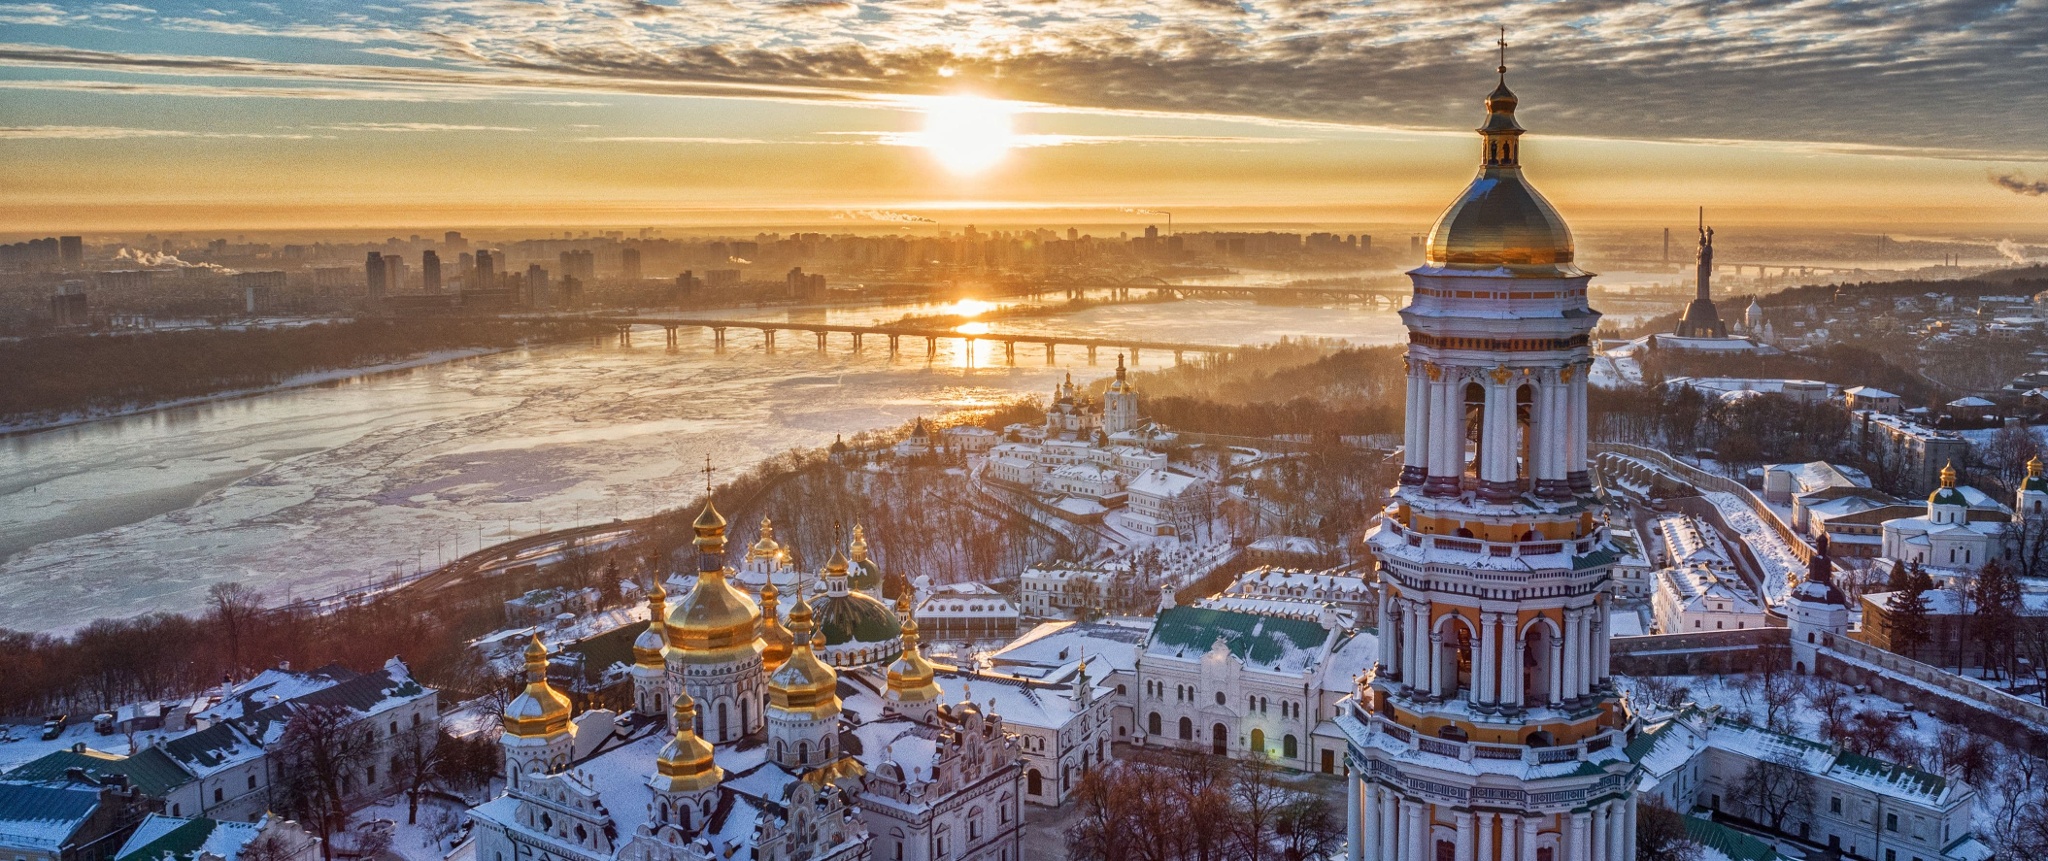 Best of Pictures of kiev, ukraine